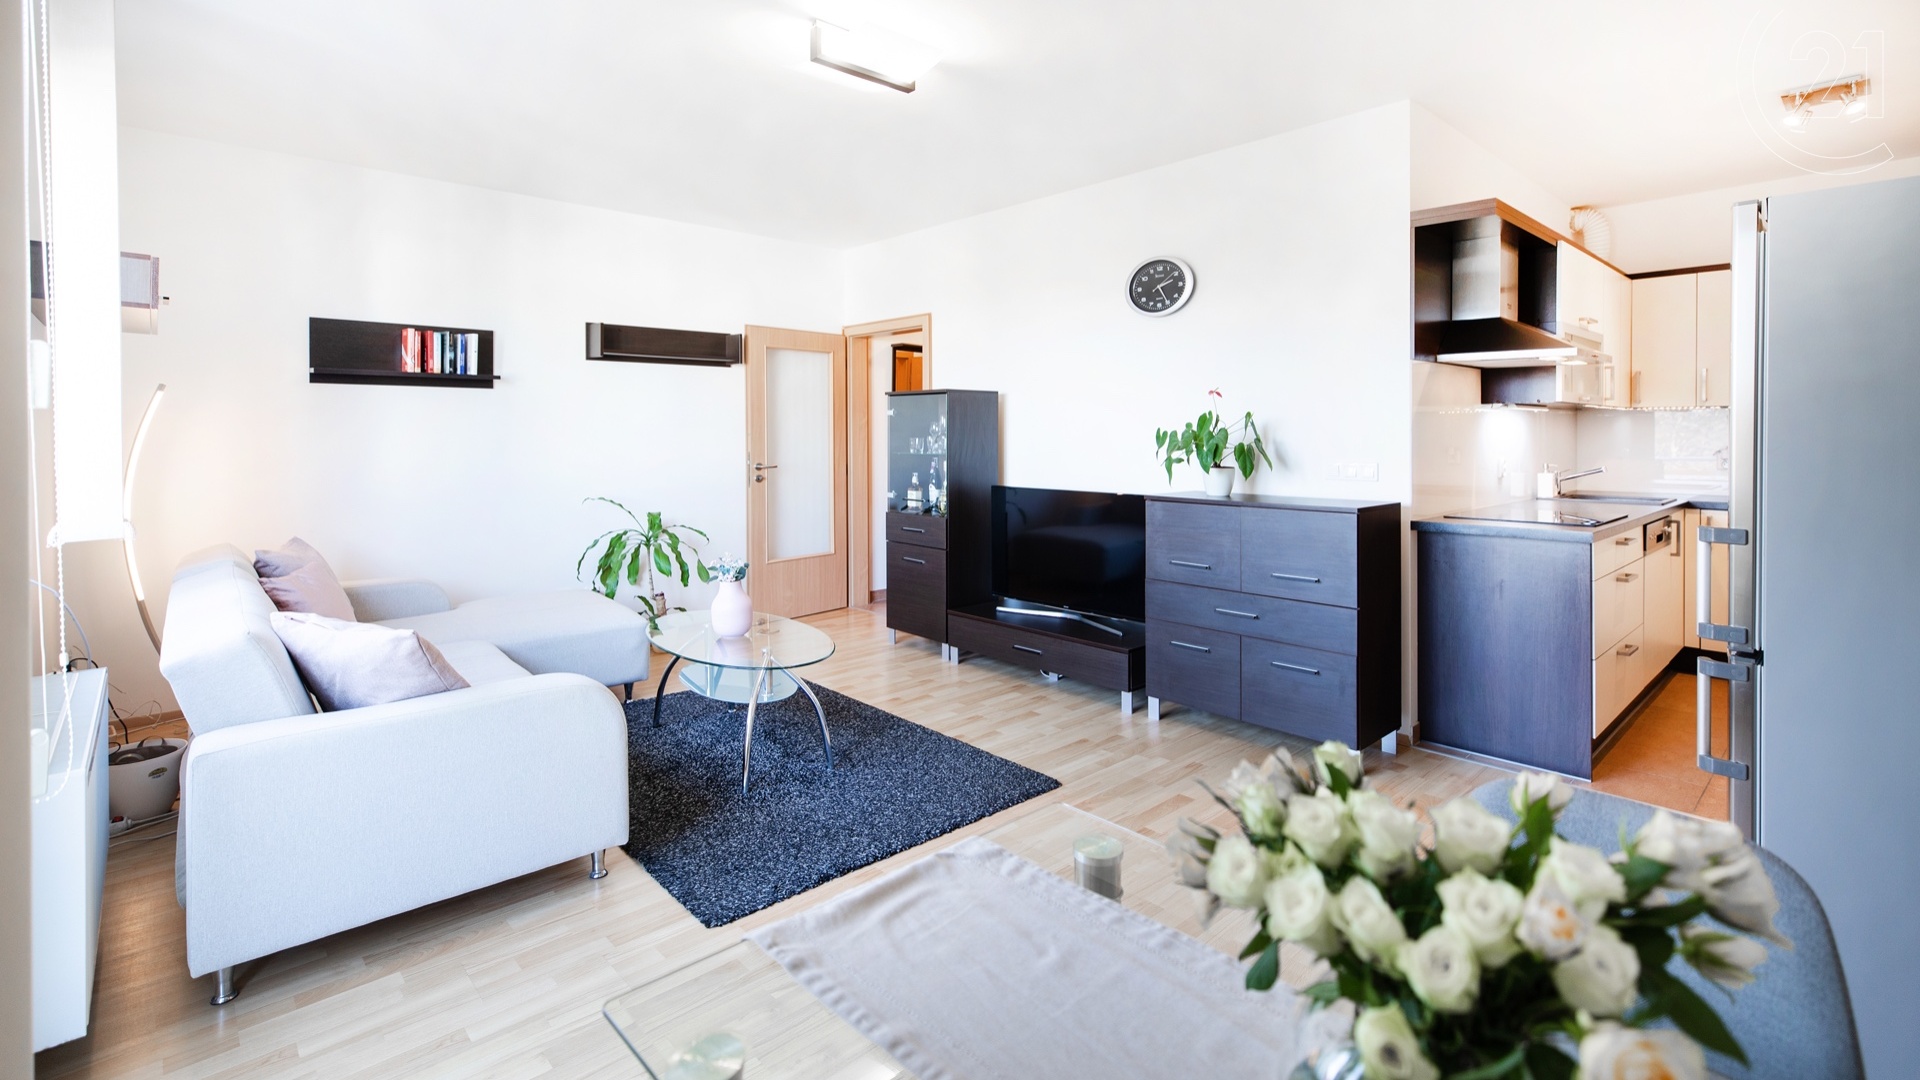 Prodej bytu 2+kk, 55m², balkon, garážové stání, sklep, Praha - Vinoř